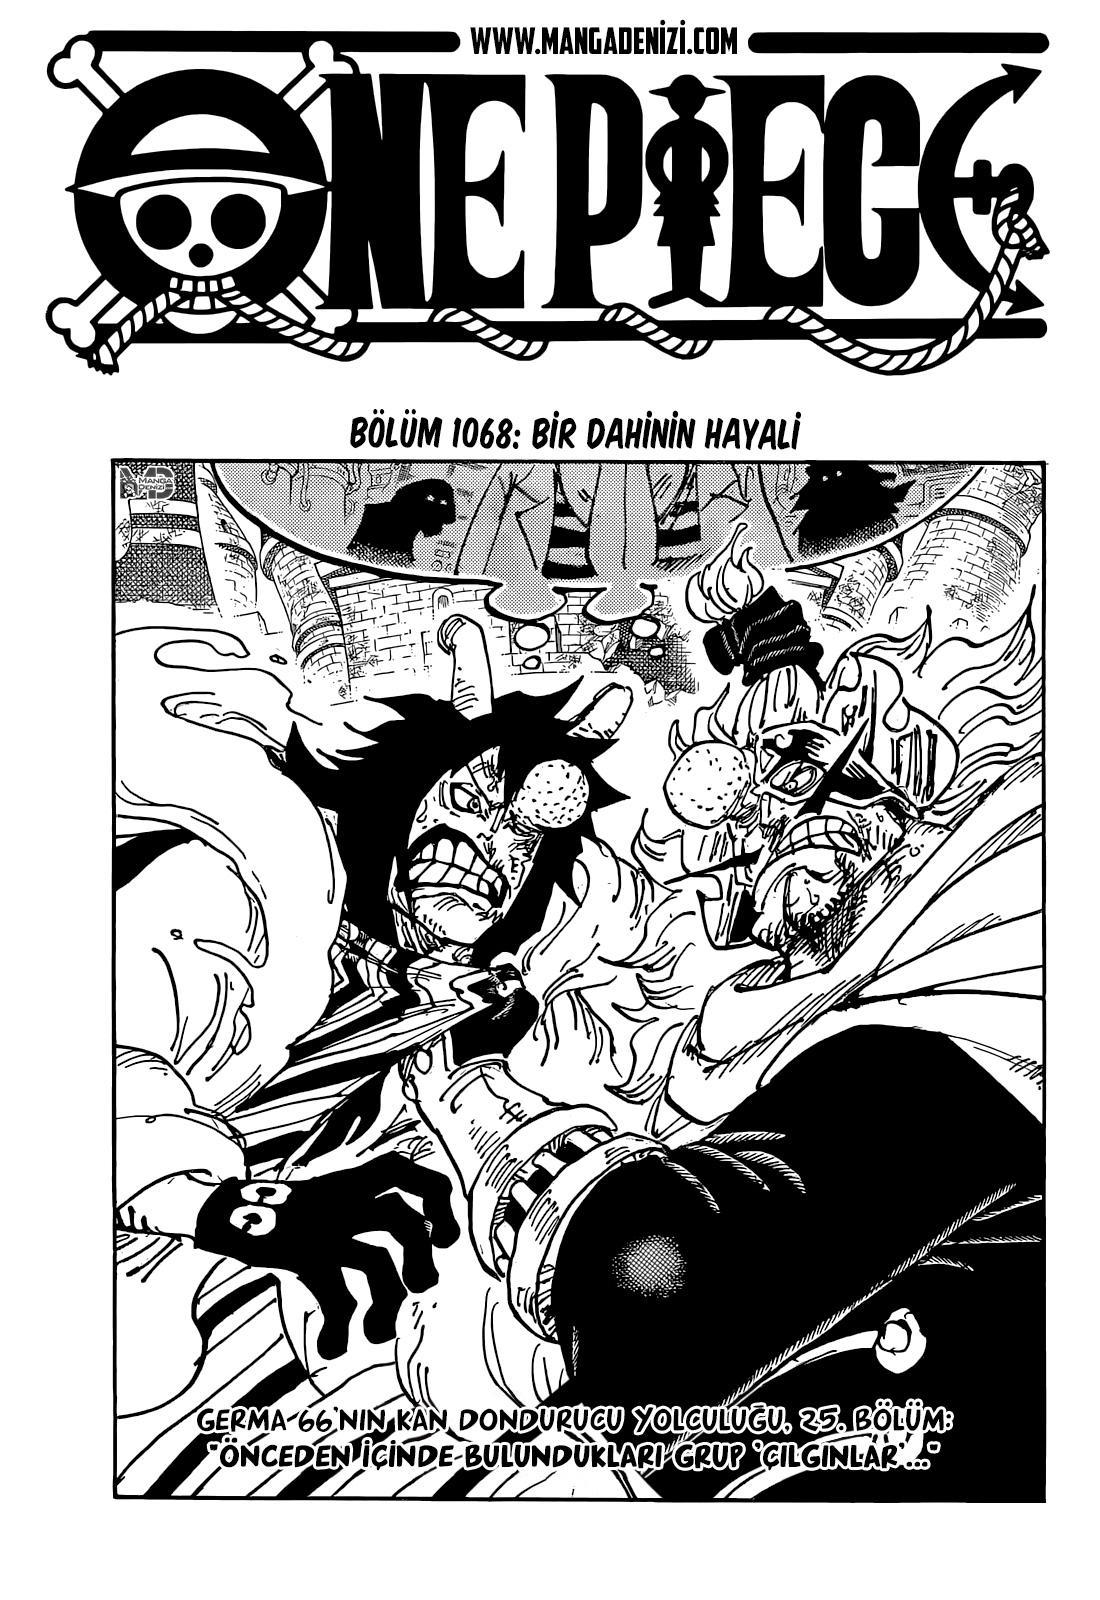 One Piece mangasının 1068 bölümünün 2. sayfasını okuyorsunuz.